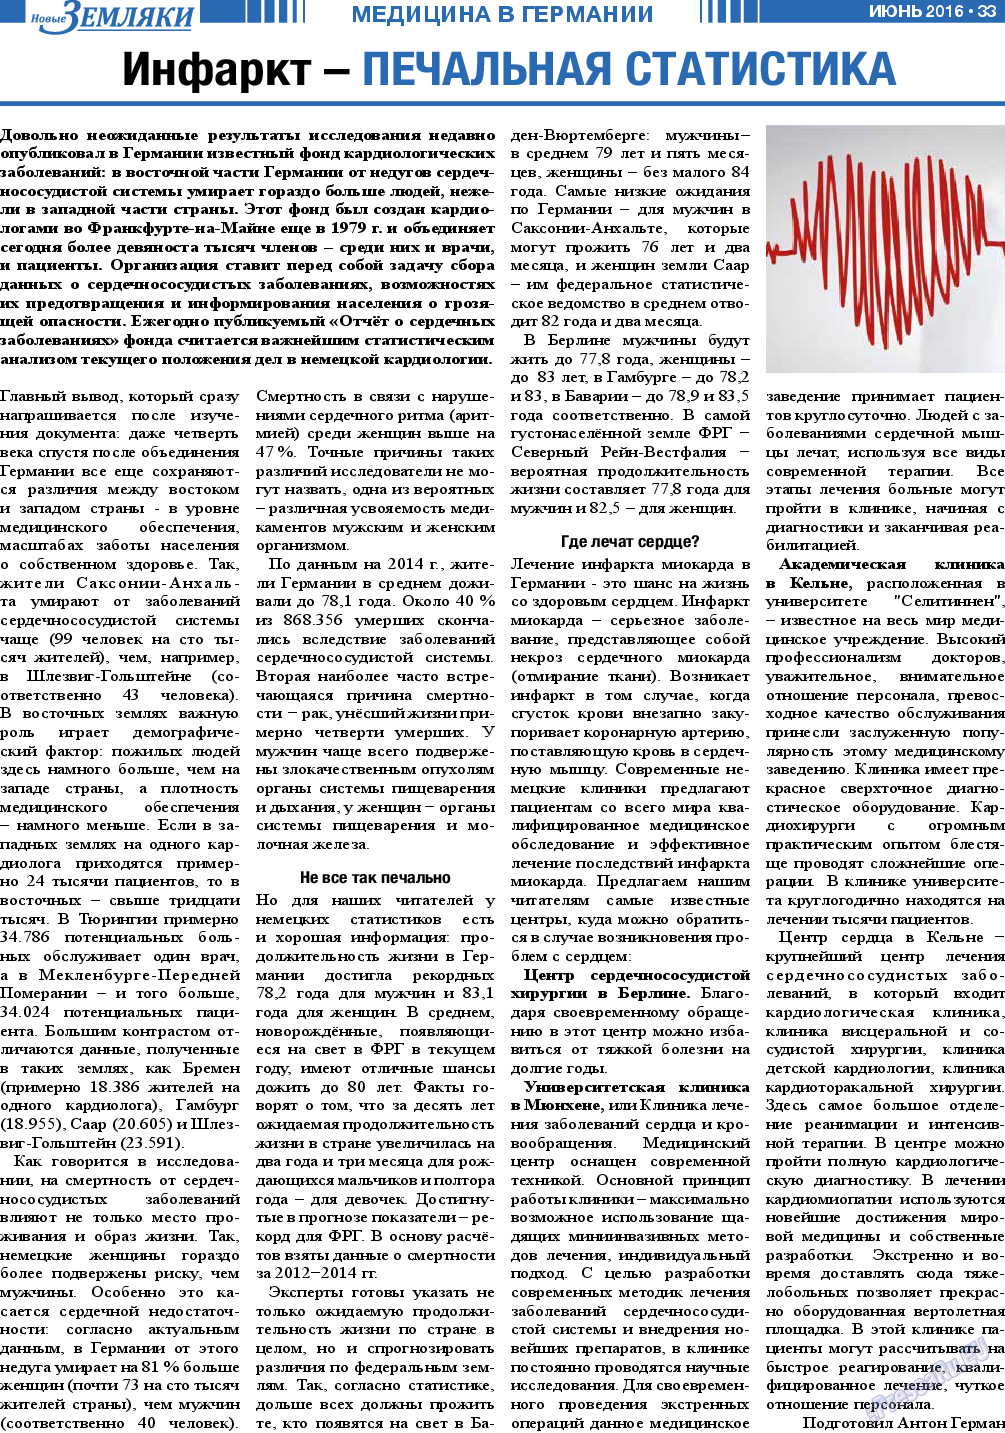 Новые Земляки, газета. 2016 №6 стр.33